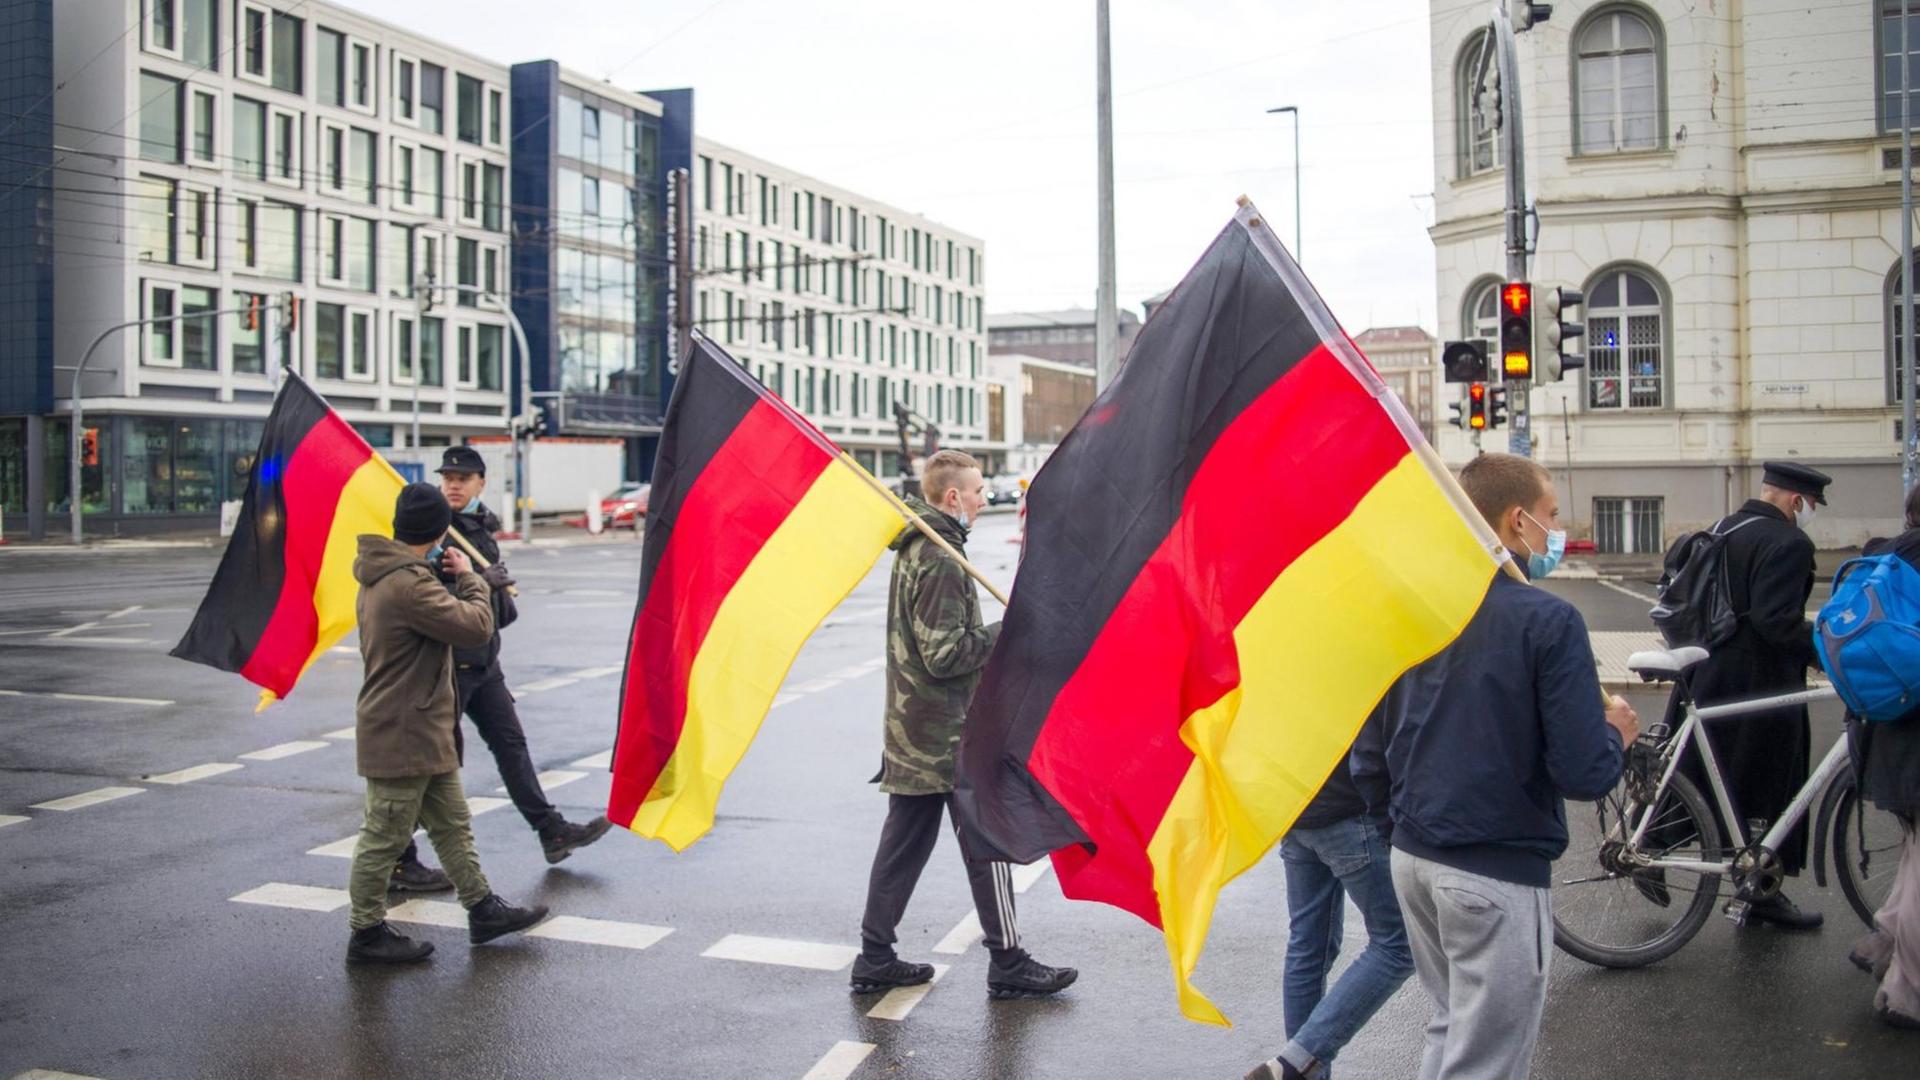 Deutschlandfahnen tragen Teilnehmer einer Demonstration am Abend in der City von Rostock. Jeden Montag kommt es in mehreren Städten von Mecklenburg-Vorpommern zu Demonstrationen gegen die Maßnahmen zur Eindämmung der Corona-Pandemie.